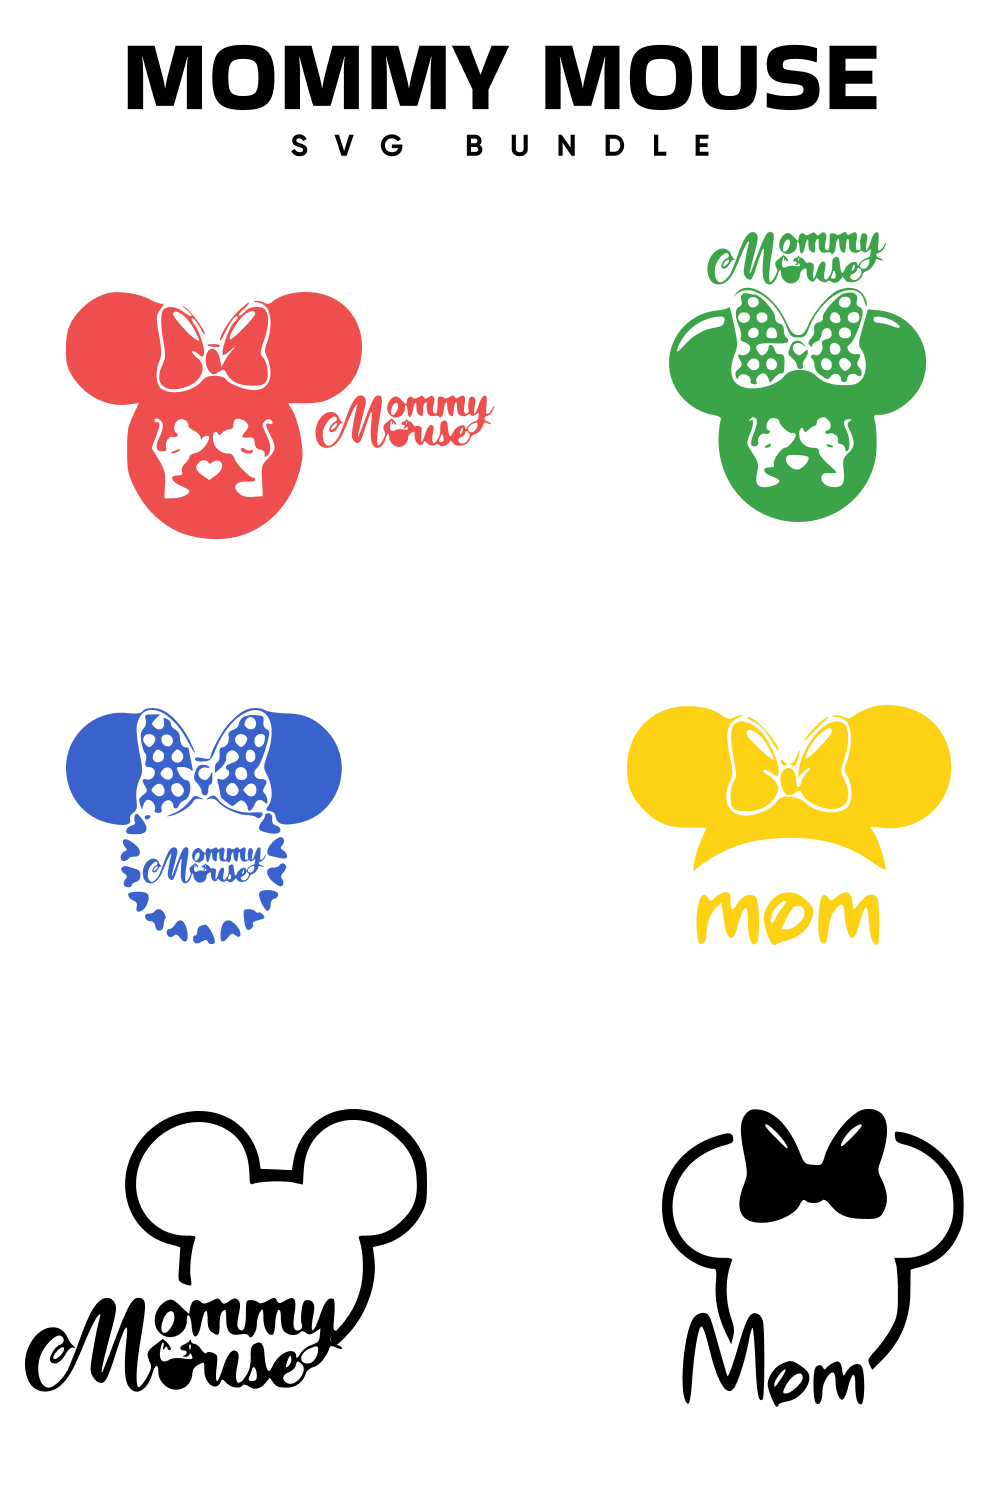 01. mommy mouse svg bundle 1000 x 1500 1 733